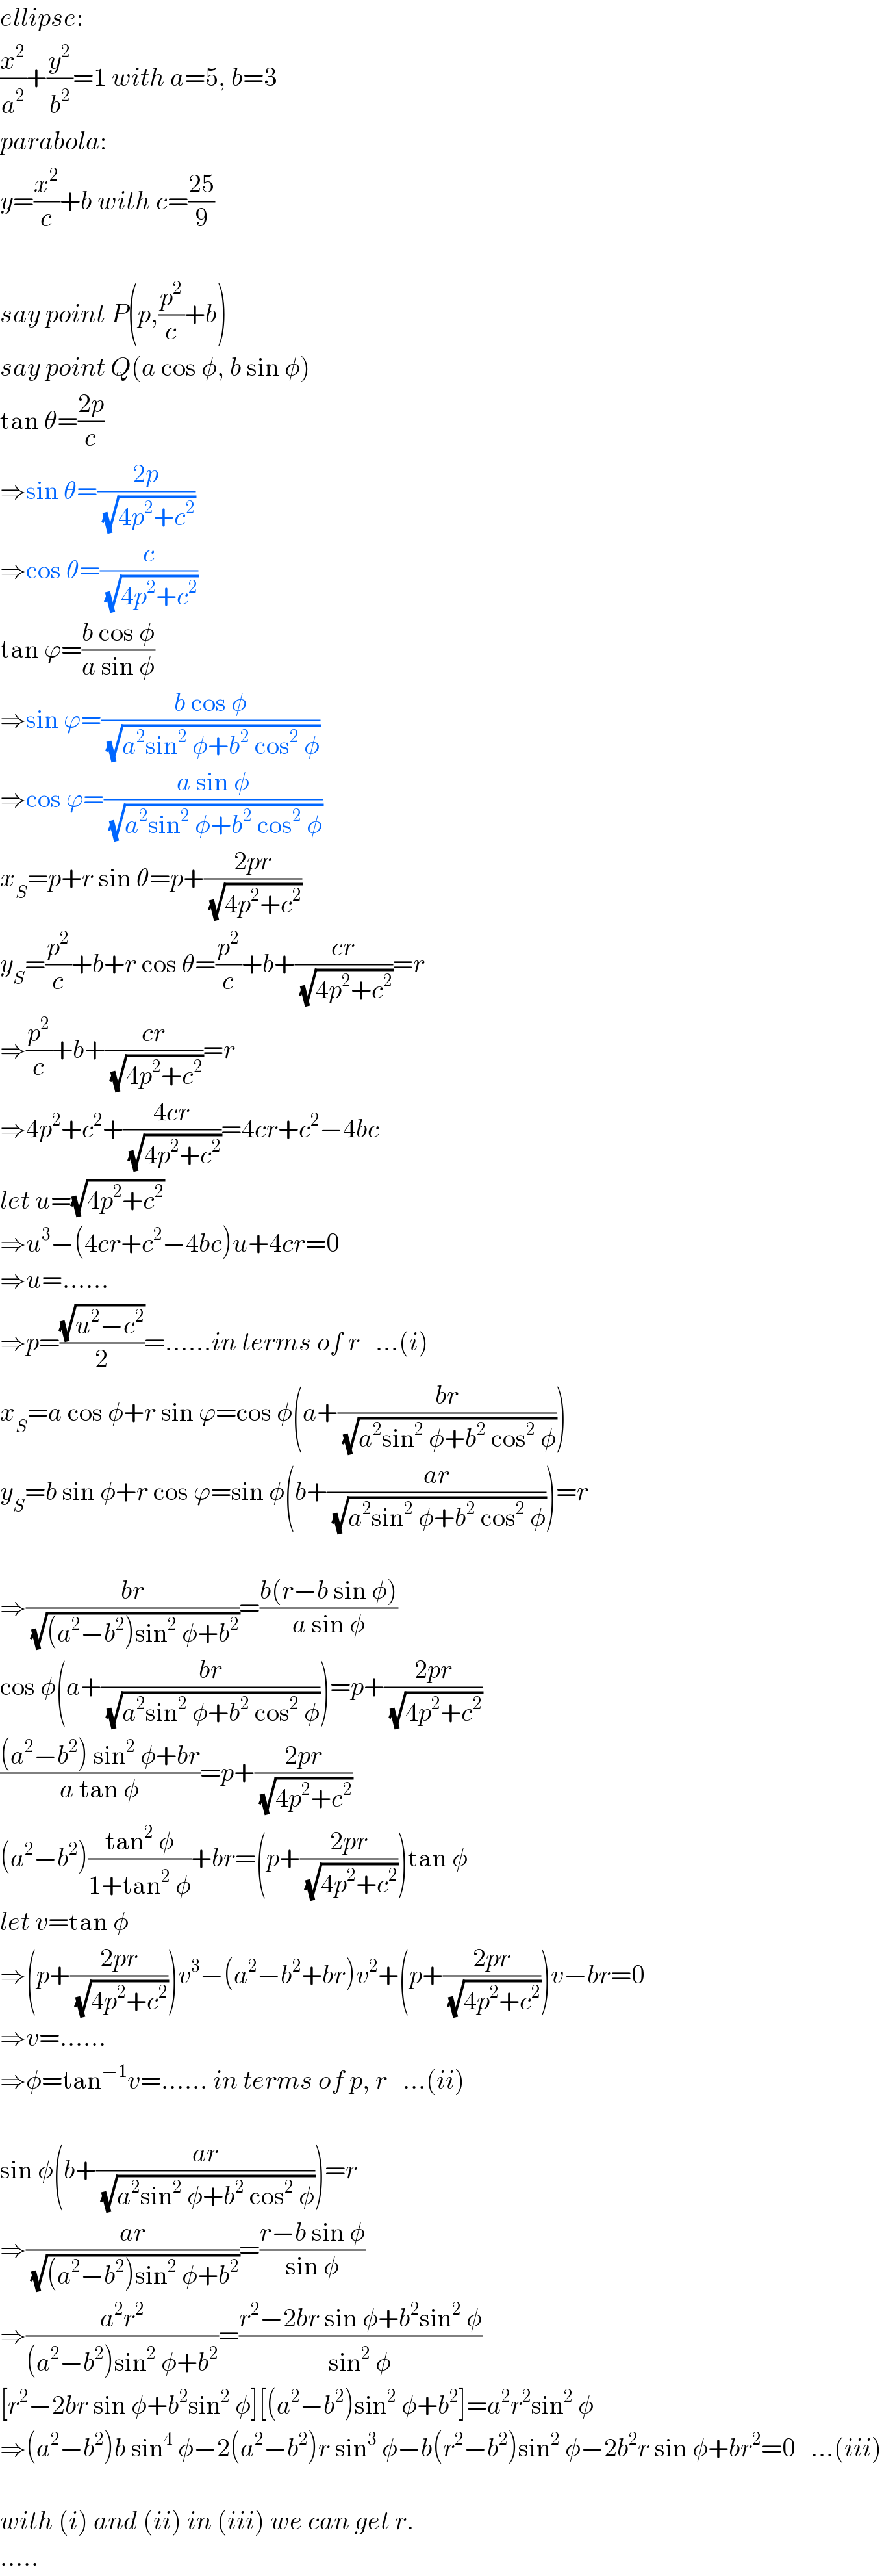 ellipse:  (x^2 /a^2 )+(y^2 /b^2 )=1 with a=5, b=3  parabola:  y=(x^2 /c)+b with c=((25)/9)    say point P(p,(p^2 /c)+b)  say point Q(a cos φ, b sin φ)  tan θ=((2p)/c)  ⇒sin θ=((2p)/(√(4p^2 +c^2 )))  ⇒cos θ=(c/(√(4p^2 +c^2 )))  tan ϕ=((b cos φ)/(a sin φ))  ⇒sin ϕ=((b cos φ)/(√(a^2 sin^2  φ+b^2  cos^2  φ)))  ⇒cos ϕ=((a sin φ)/(√(a^2 sin^2  φ+b^2  cos^2  φ)))  x_S =p+r sin θ=p+((2pr)/(√(4p^2 +c^2 )))  y_S =(p^2 /c)+b+r cos θ=(p^2 /c)+b+((cr)/(√(4p^2 +c^2 )))=r  ⇒(p^2 /c)+b+((cr)/(√(4p^2 +c^2 )))=r  ⇒4p^2 +c^2 +((4cr)/(√(4p^2 +c^2 )))=4cr+c^2 −4bc  let u=(√(4p^2 +c^2 ))  ⇒u^3 −(4cr+c^2 −4bc)u+4cr=0  ⇒u=......  ⇒p=((√(u^2 −c^2 ))/2)=......in terms of r   ...(i)  x_S =a cos φ+r sin ϕ=cos φ(a+((br)/(√(a^2 sin^2  φ+b^2  cos^2  φ))))  y_S =b sin φ+r cos ϕ=sin φ(b+((ar)/(√(a^2 sin^2  φ+b^2  cos^2  φ))))=r    ⇒((br)/(√((a^2 −b^2 )sin^2  φ+b^2 )))=((b(r−b sin φ))/(a sin φ))  cos φ(a+((br)/(√(a^2 sin^2  φ+b^2  cos^2  φ))))=p+((2pr)/(√(4p^2 +c^2 )))  (((a^2 −b^2 ) sin^2  φ+br)/(a tan φ))=p+((2pr)/(√(4p^2 +c^2 )))  (a^2 −b^2 )((tan^2  φ)/(1+tan^2  φ))+br=(p+((2pr)/(√(4p^2 +c^2 ))))tan φ  let v=tan φ  ⇒(p+((2pr)/(√(4p^2 +c^2 ))))v^3 −(a^2 −b^2 +br)v^2 +(p+((2pr)/(√(4p^2 +c^2 ))))v−br=0  ⇒v=......  ⇒φ=tan^(−1) v=...... in terms of p, r   ...(ii)    sin φ(b+((ar)/(√(a^2 sin^2  φ+b^2  cos^2  φ))))=r  ⇒((ar)/(√((a^2 −b^2 )sin^2  φ+b^2 )))=((r−b sin φ)/(sin φ))  ⇒((a^2 r^2 )/((a^2 −b^2 )sin^2  φ+b^2 ))=((r^2 −2br sin φ+b^2 sin^2  φ)/(sin^2  φ))  [r^2 −2br sin φ+b^2 sin^2  φ][(a^2 −b^2 )sin^2  φ+b^2 ]=a^2 r^2 sin^2  φ  ⇒(a^2 −b^2 )b sin^4  φ−2(a^2 −b^2 )r sin^3  φ−b(r^2 −b^2 )sin^2  φ−2b^2 r sin φ+br^2 =0   ...(iii)    with (i) and (ii) in (iii) we can get r.  .....  